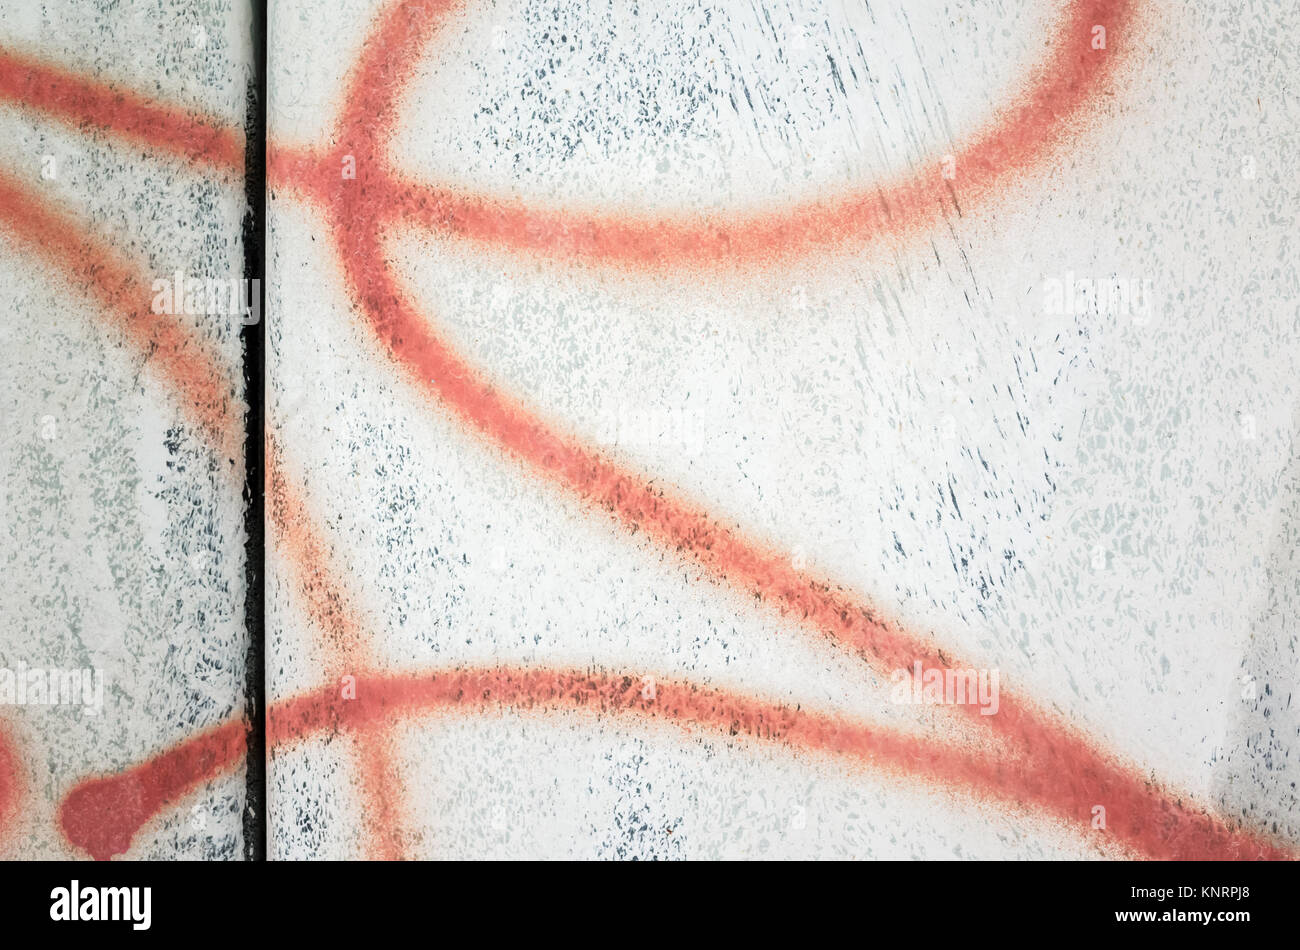 Abstract urban graffiti rossa frammento di linee su un vecchio muro bianco Foto Stock